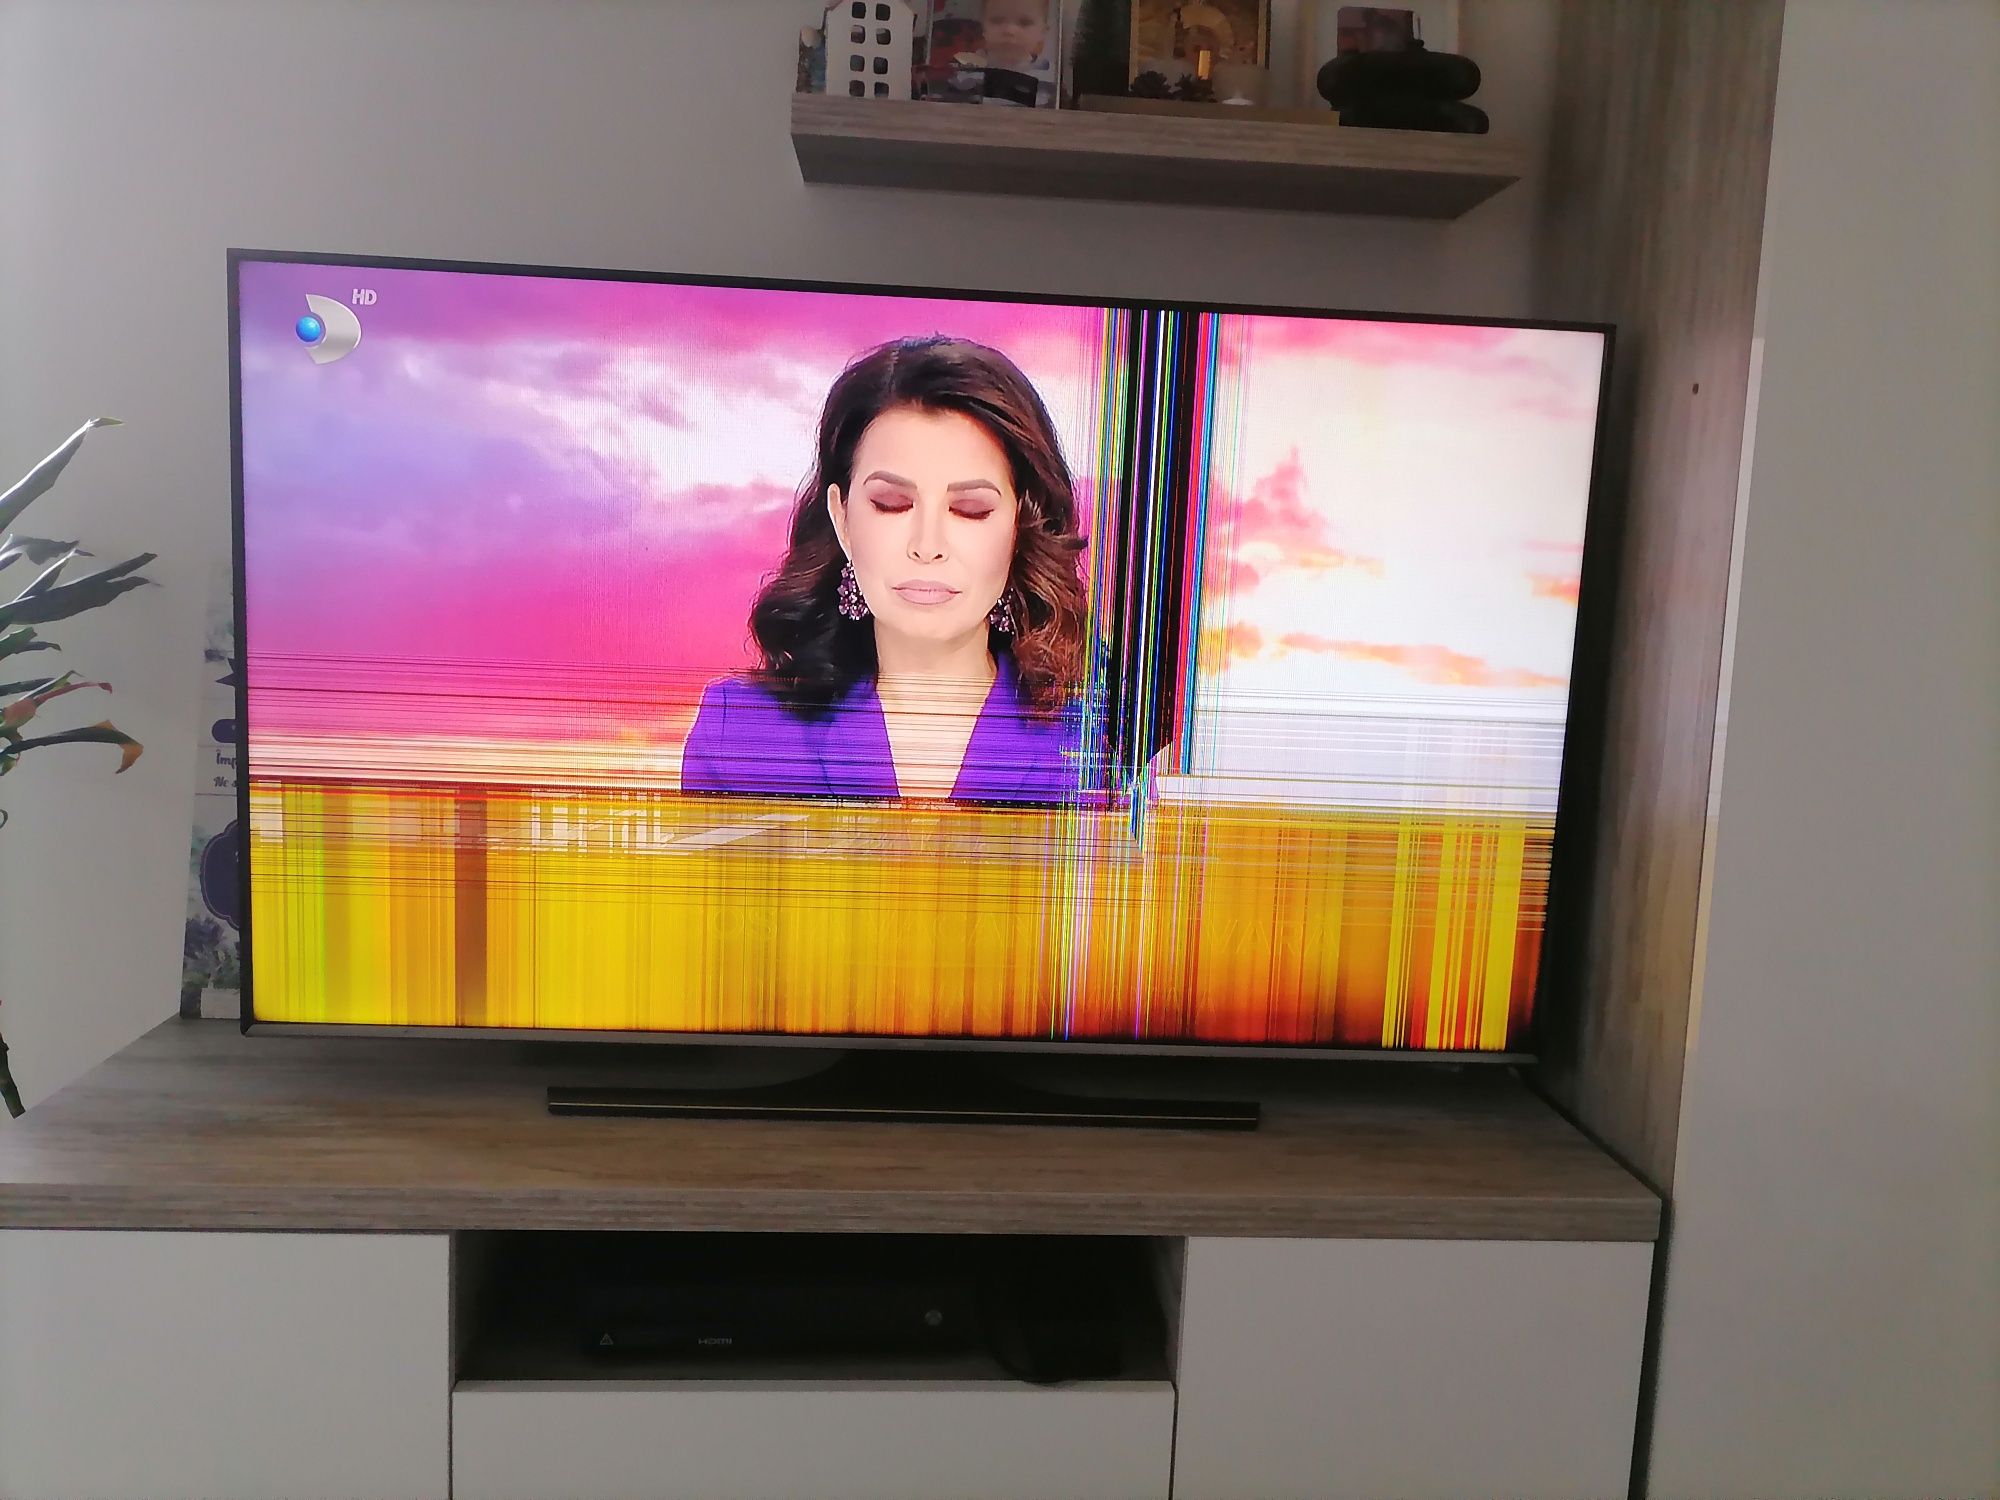 Vând TV Samsung cu probleme de imagine